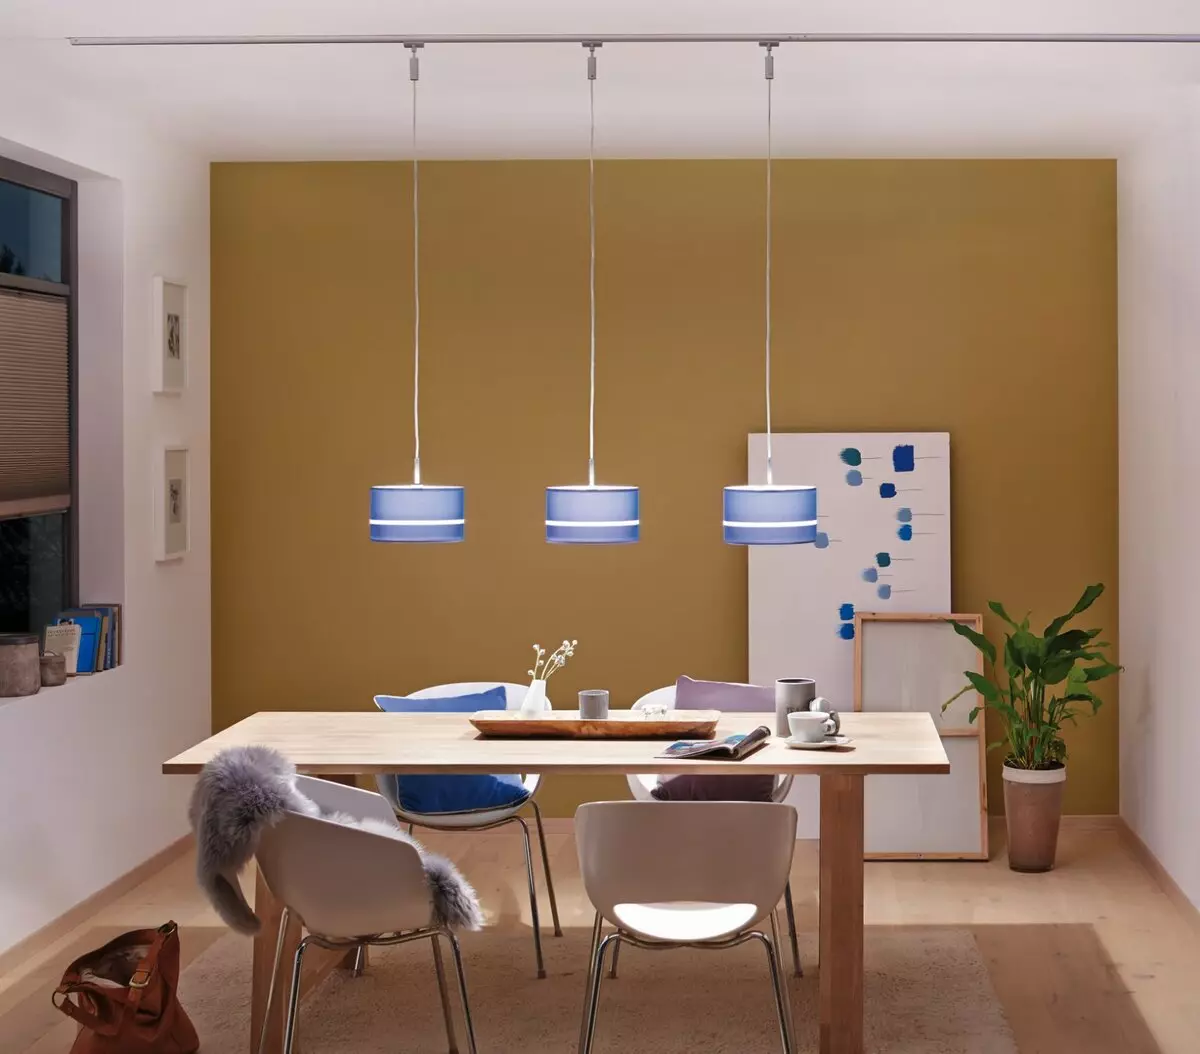 لامپ های آشپزخانه (74 عکس): آشپزخانه Sconce و لامپ های سنسور دیوار نصب شده، سربار و چراغ های پیگیری و سقف، گزینه های دیگر 21003_26